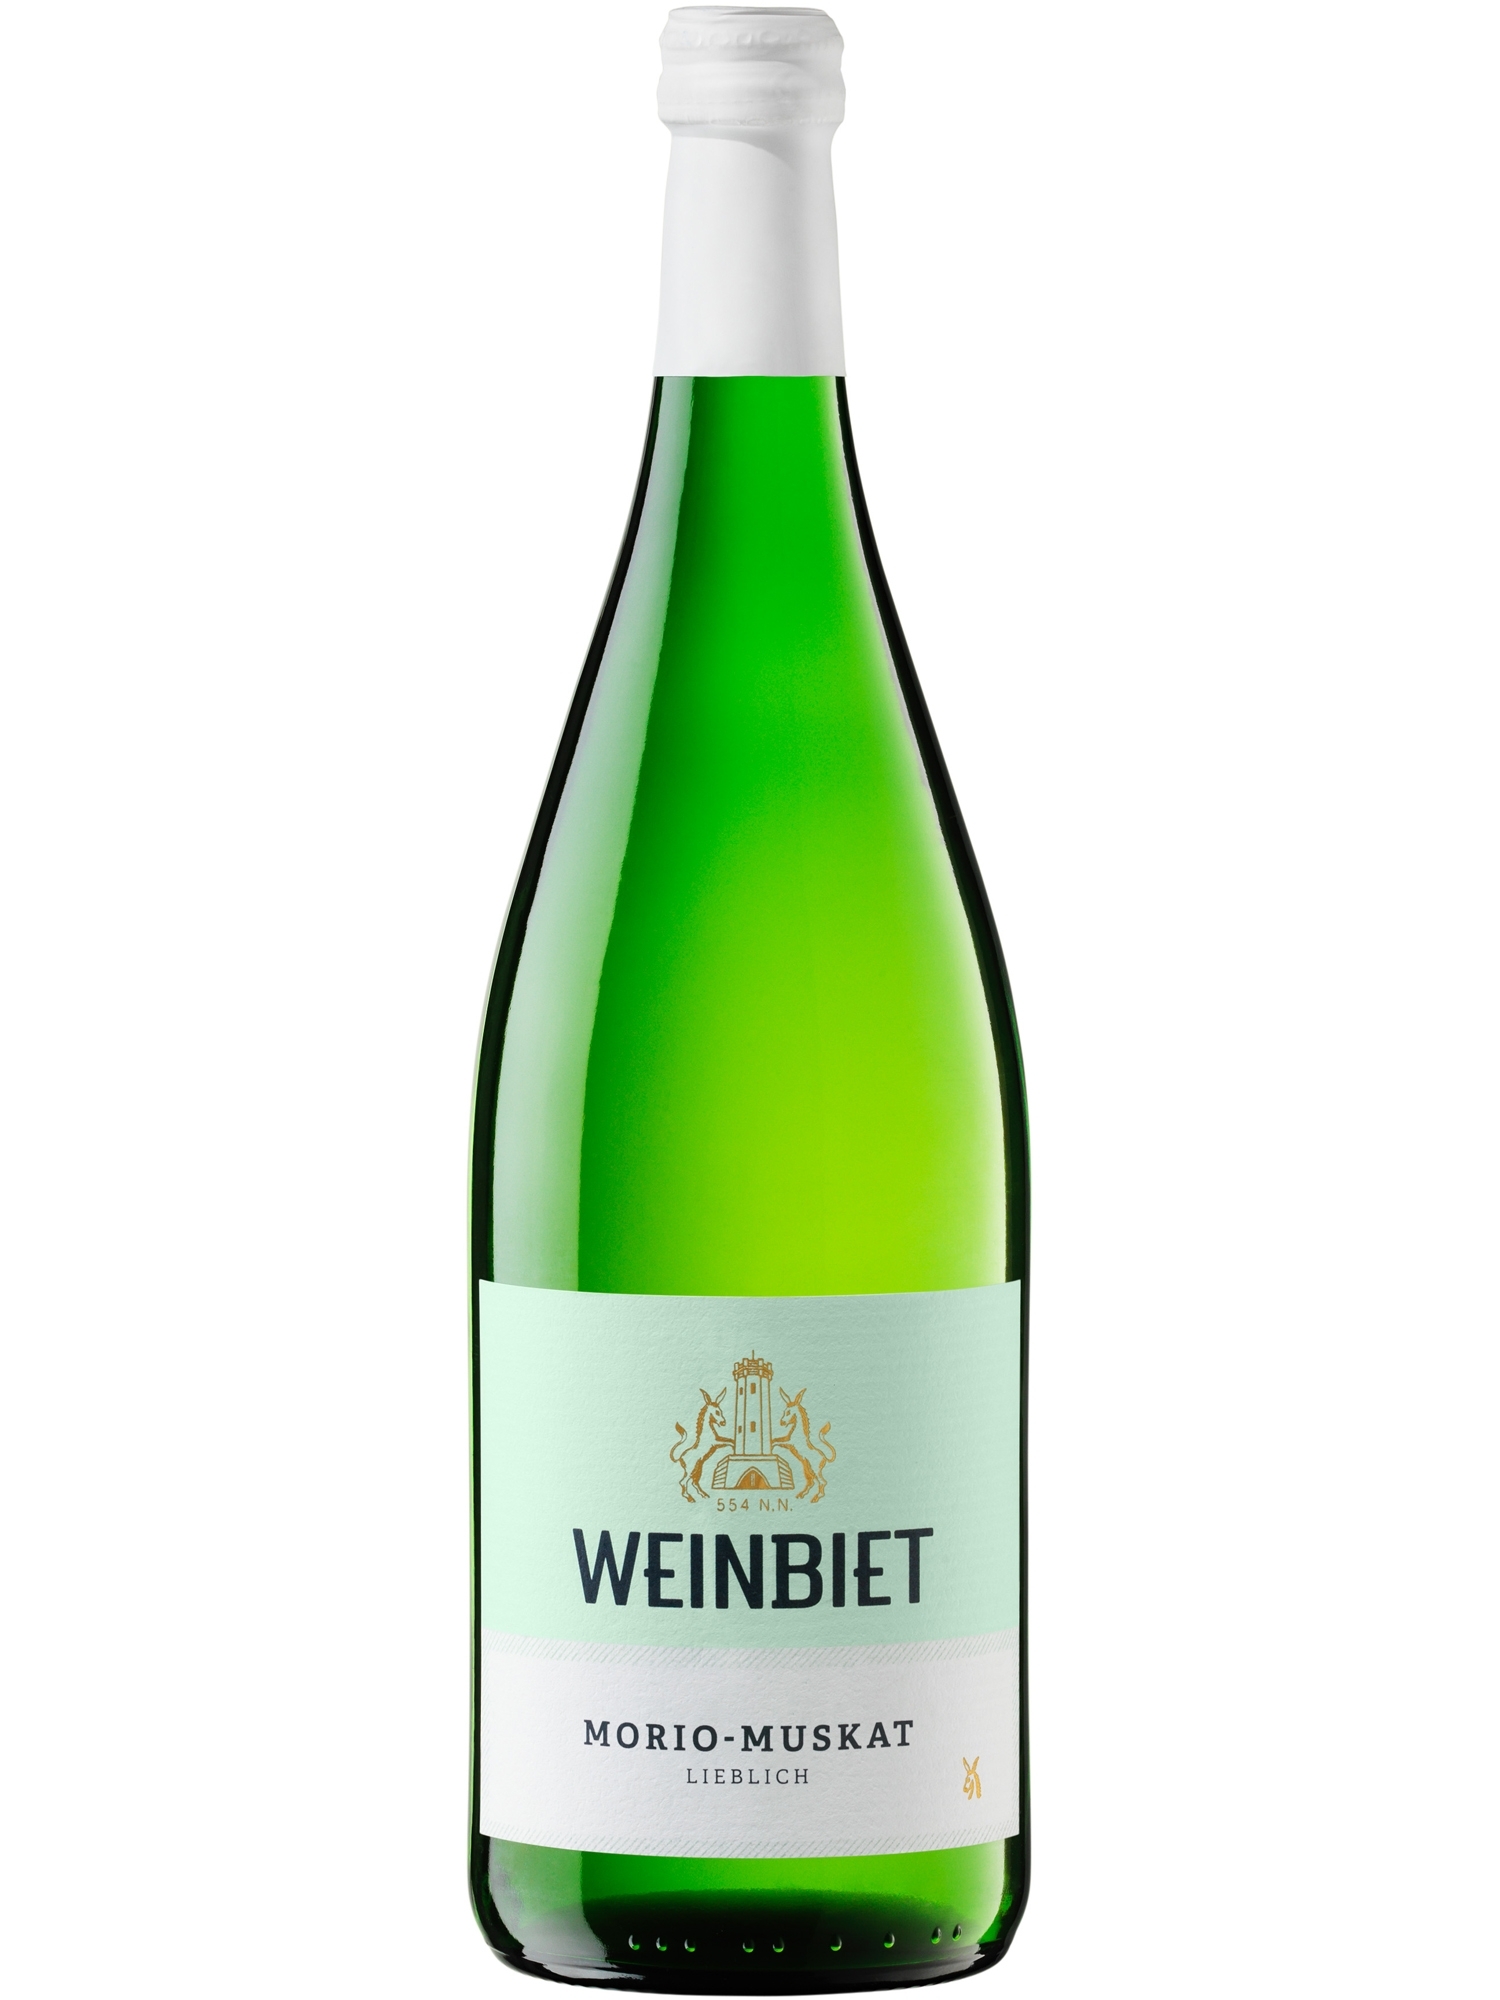 morio-muskat lieblich - Weinbiet | Wein Online Pfalz